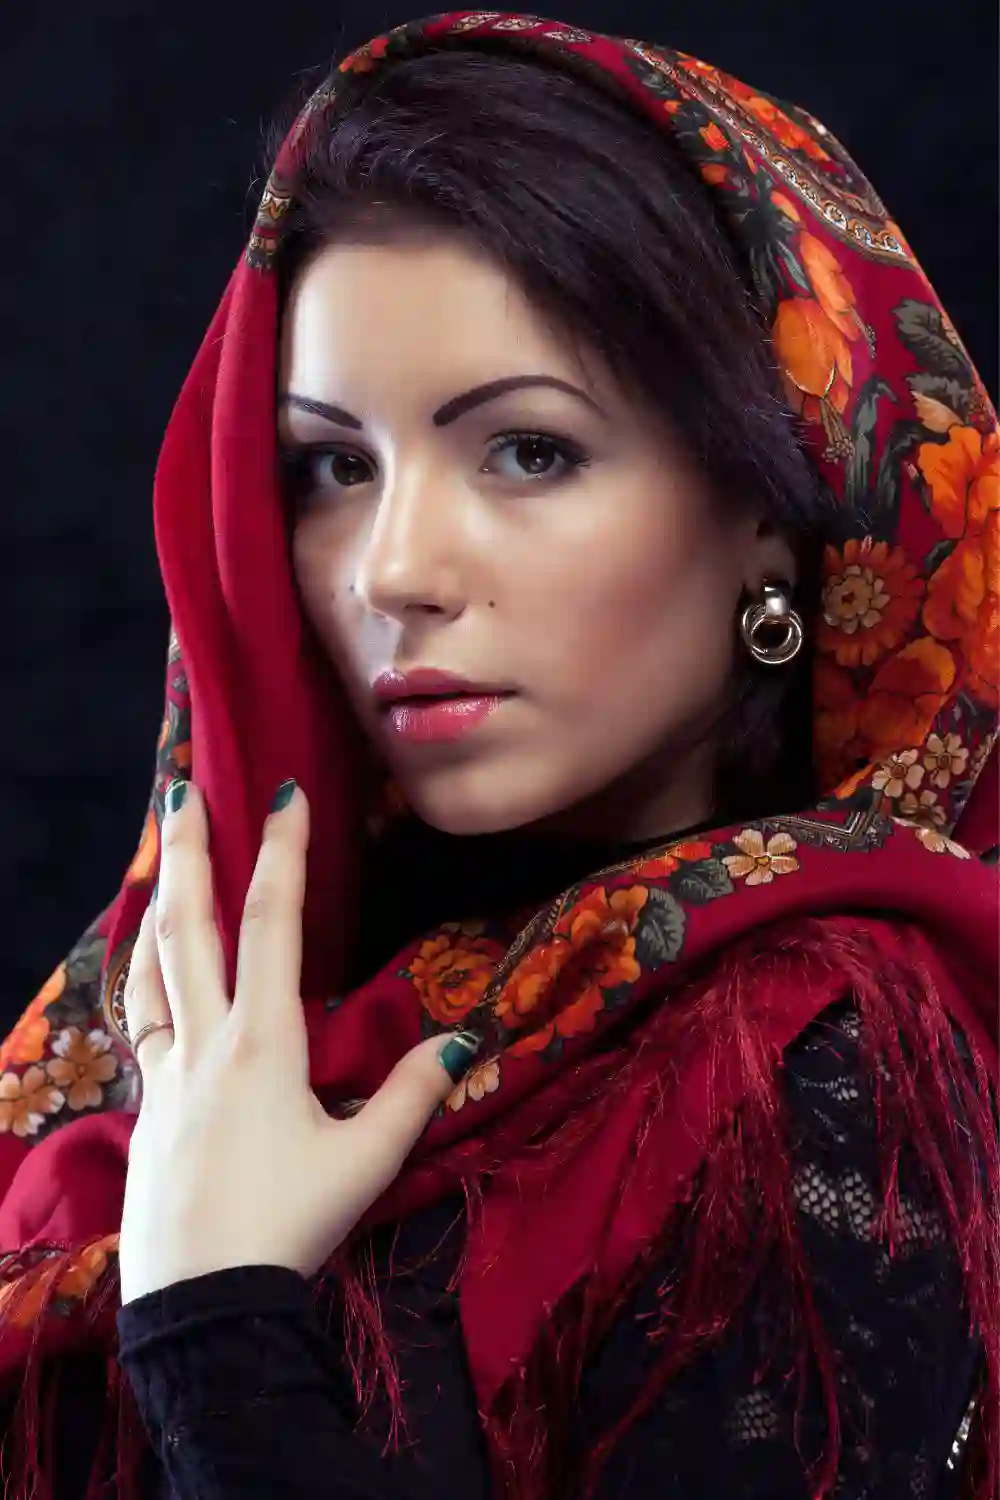 Beautiful young Russian girl